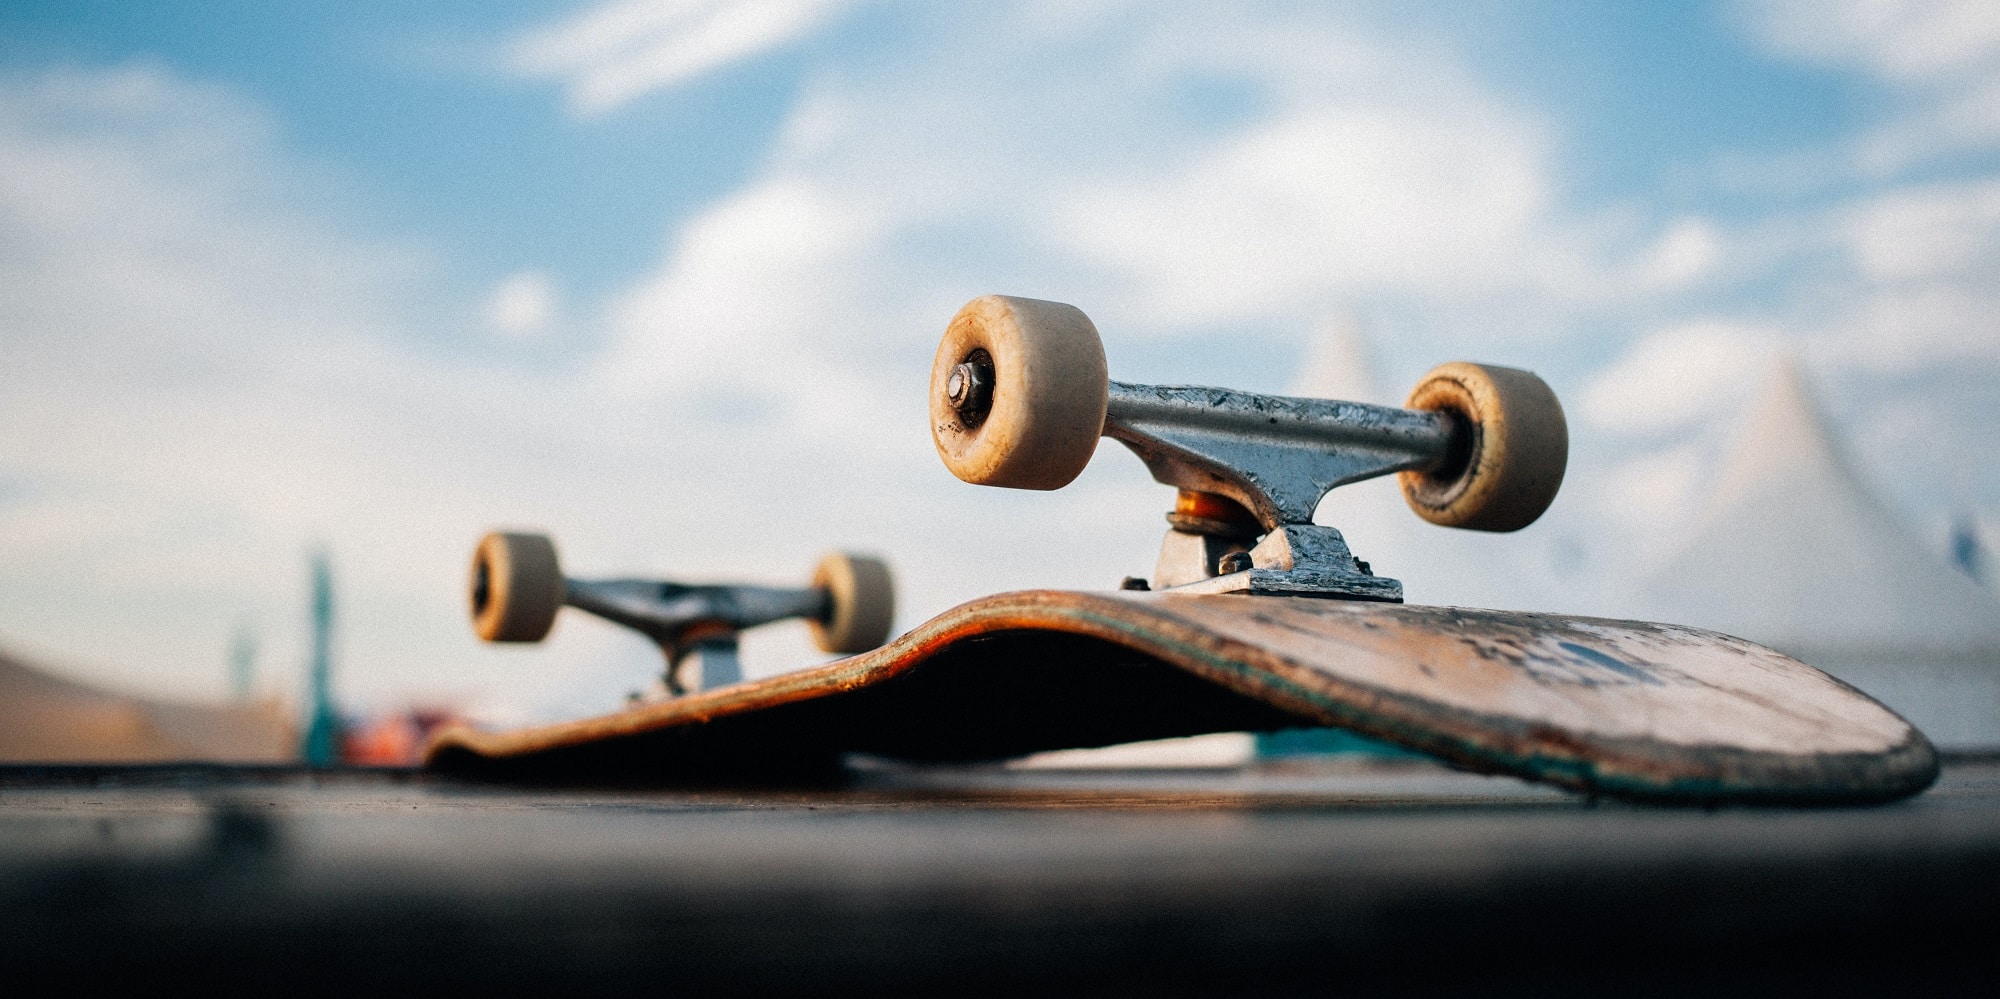 Η Γαλλία στήνει πίστα skateboarding στον Σηκουάνα